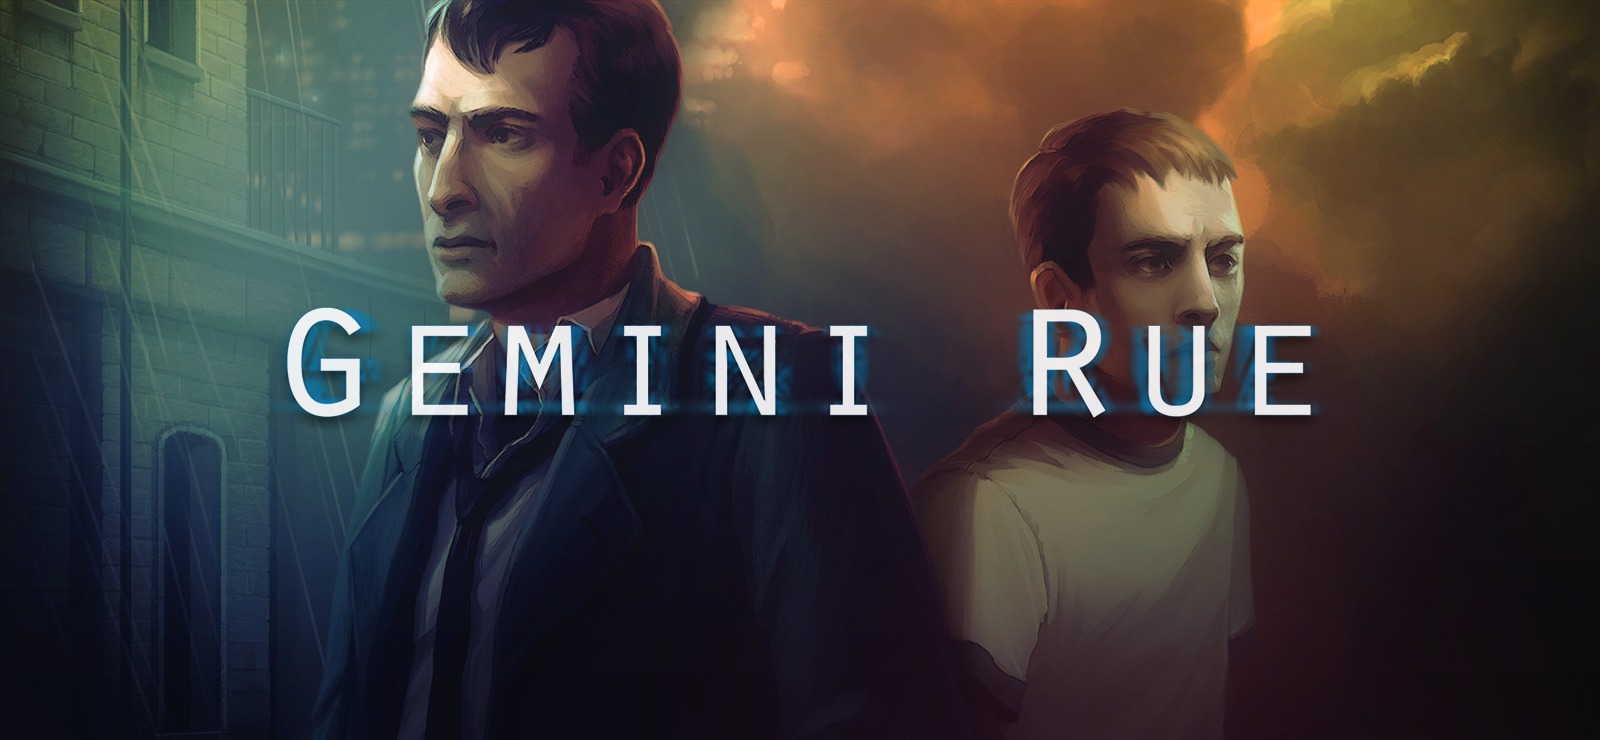 Gemini Rue #4